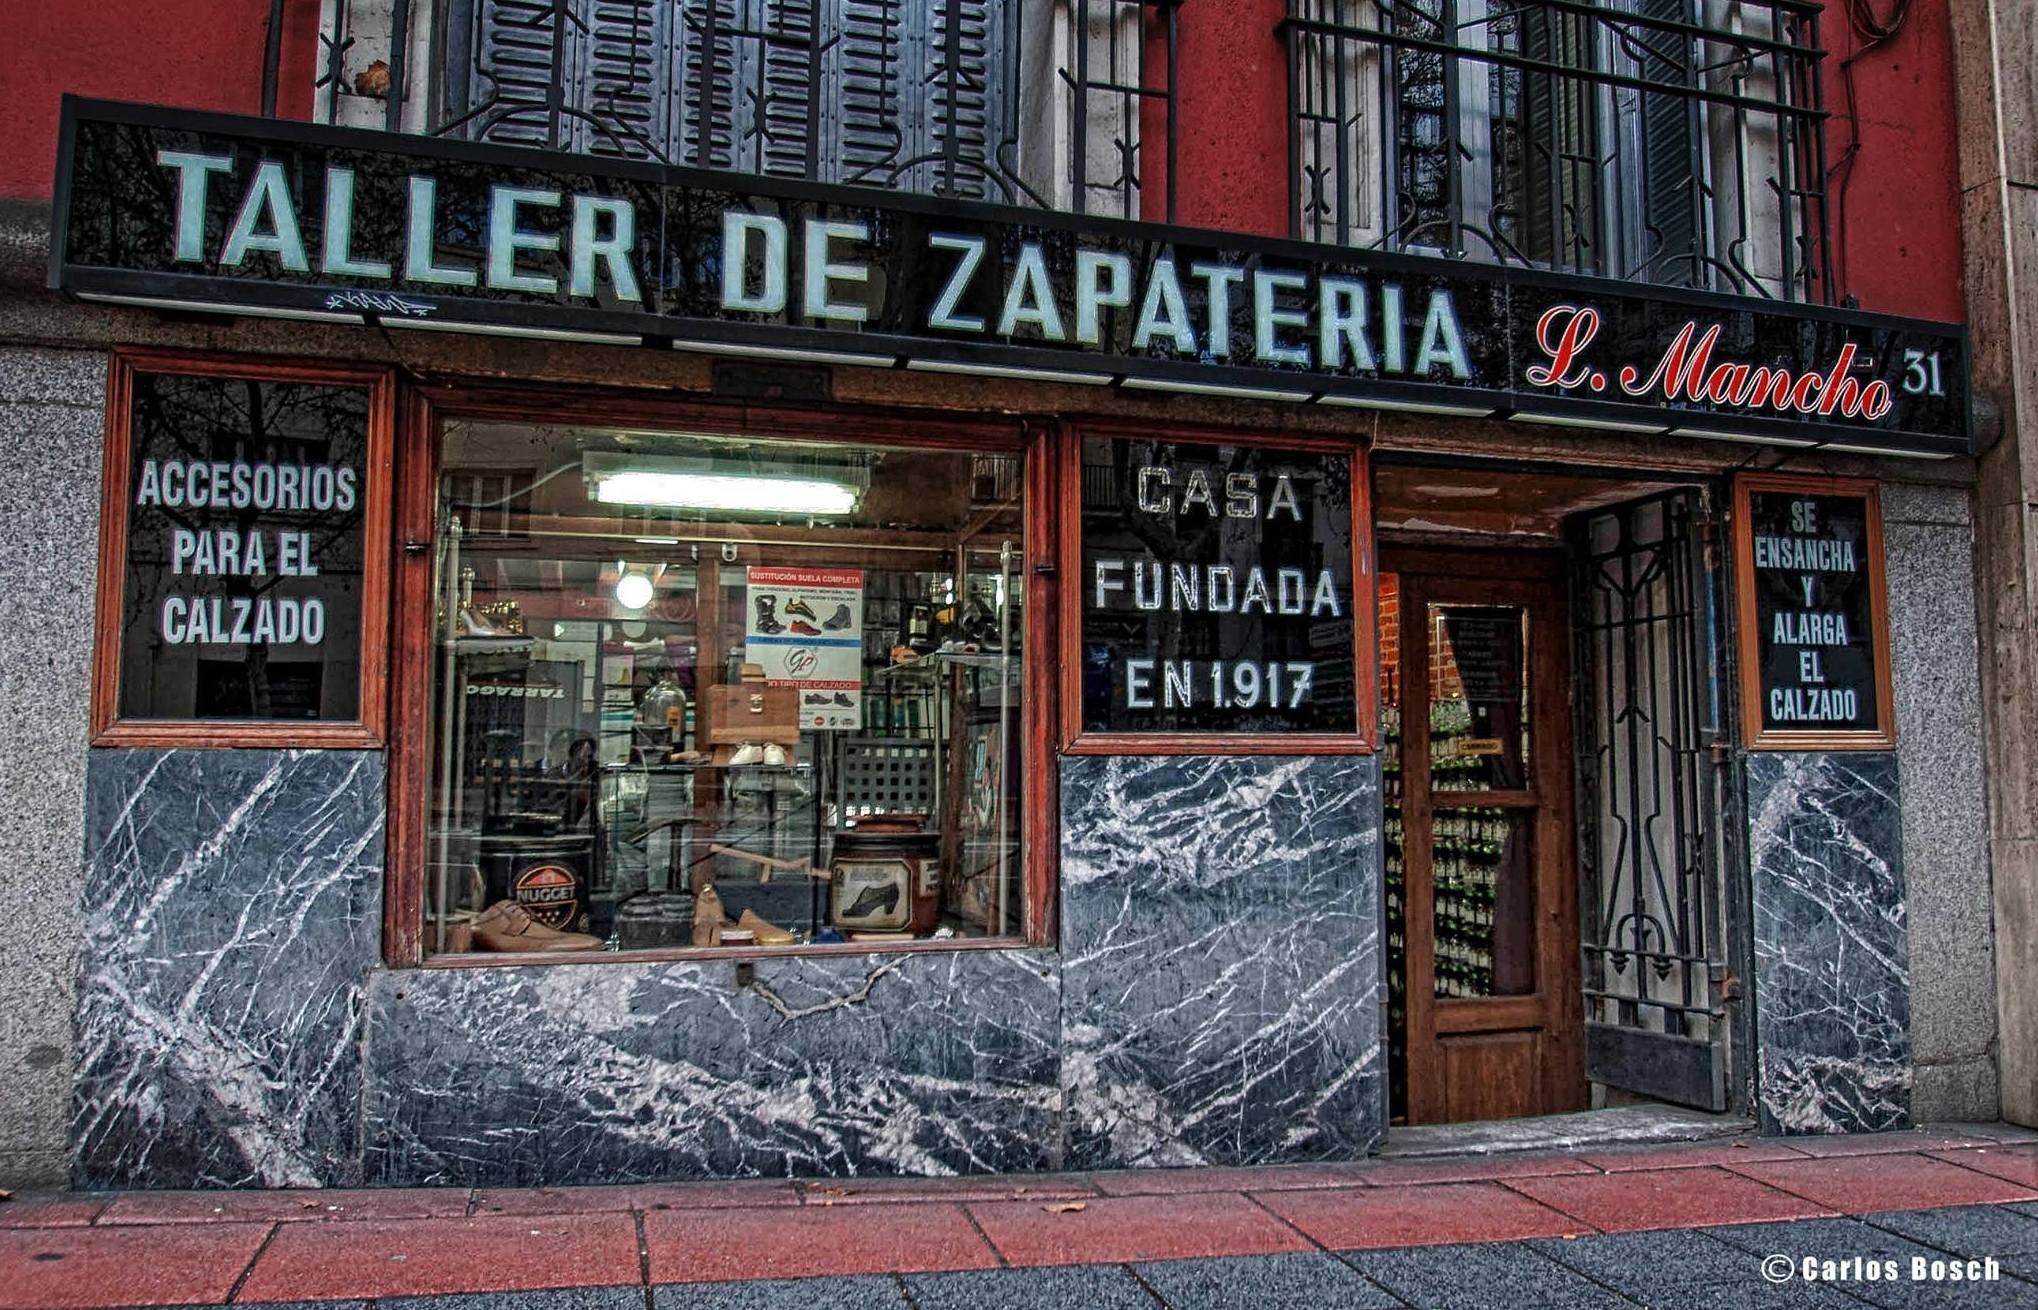 Taller Artesanal de Zapatería Luis Mancho, Madrid.